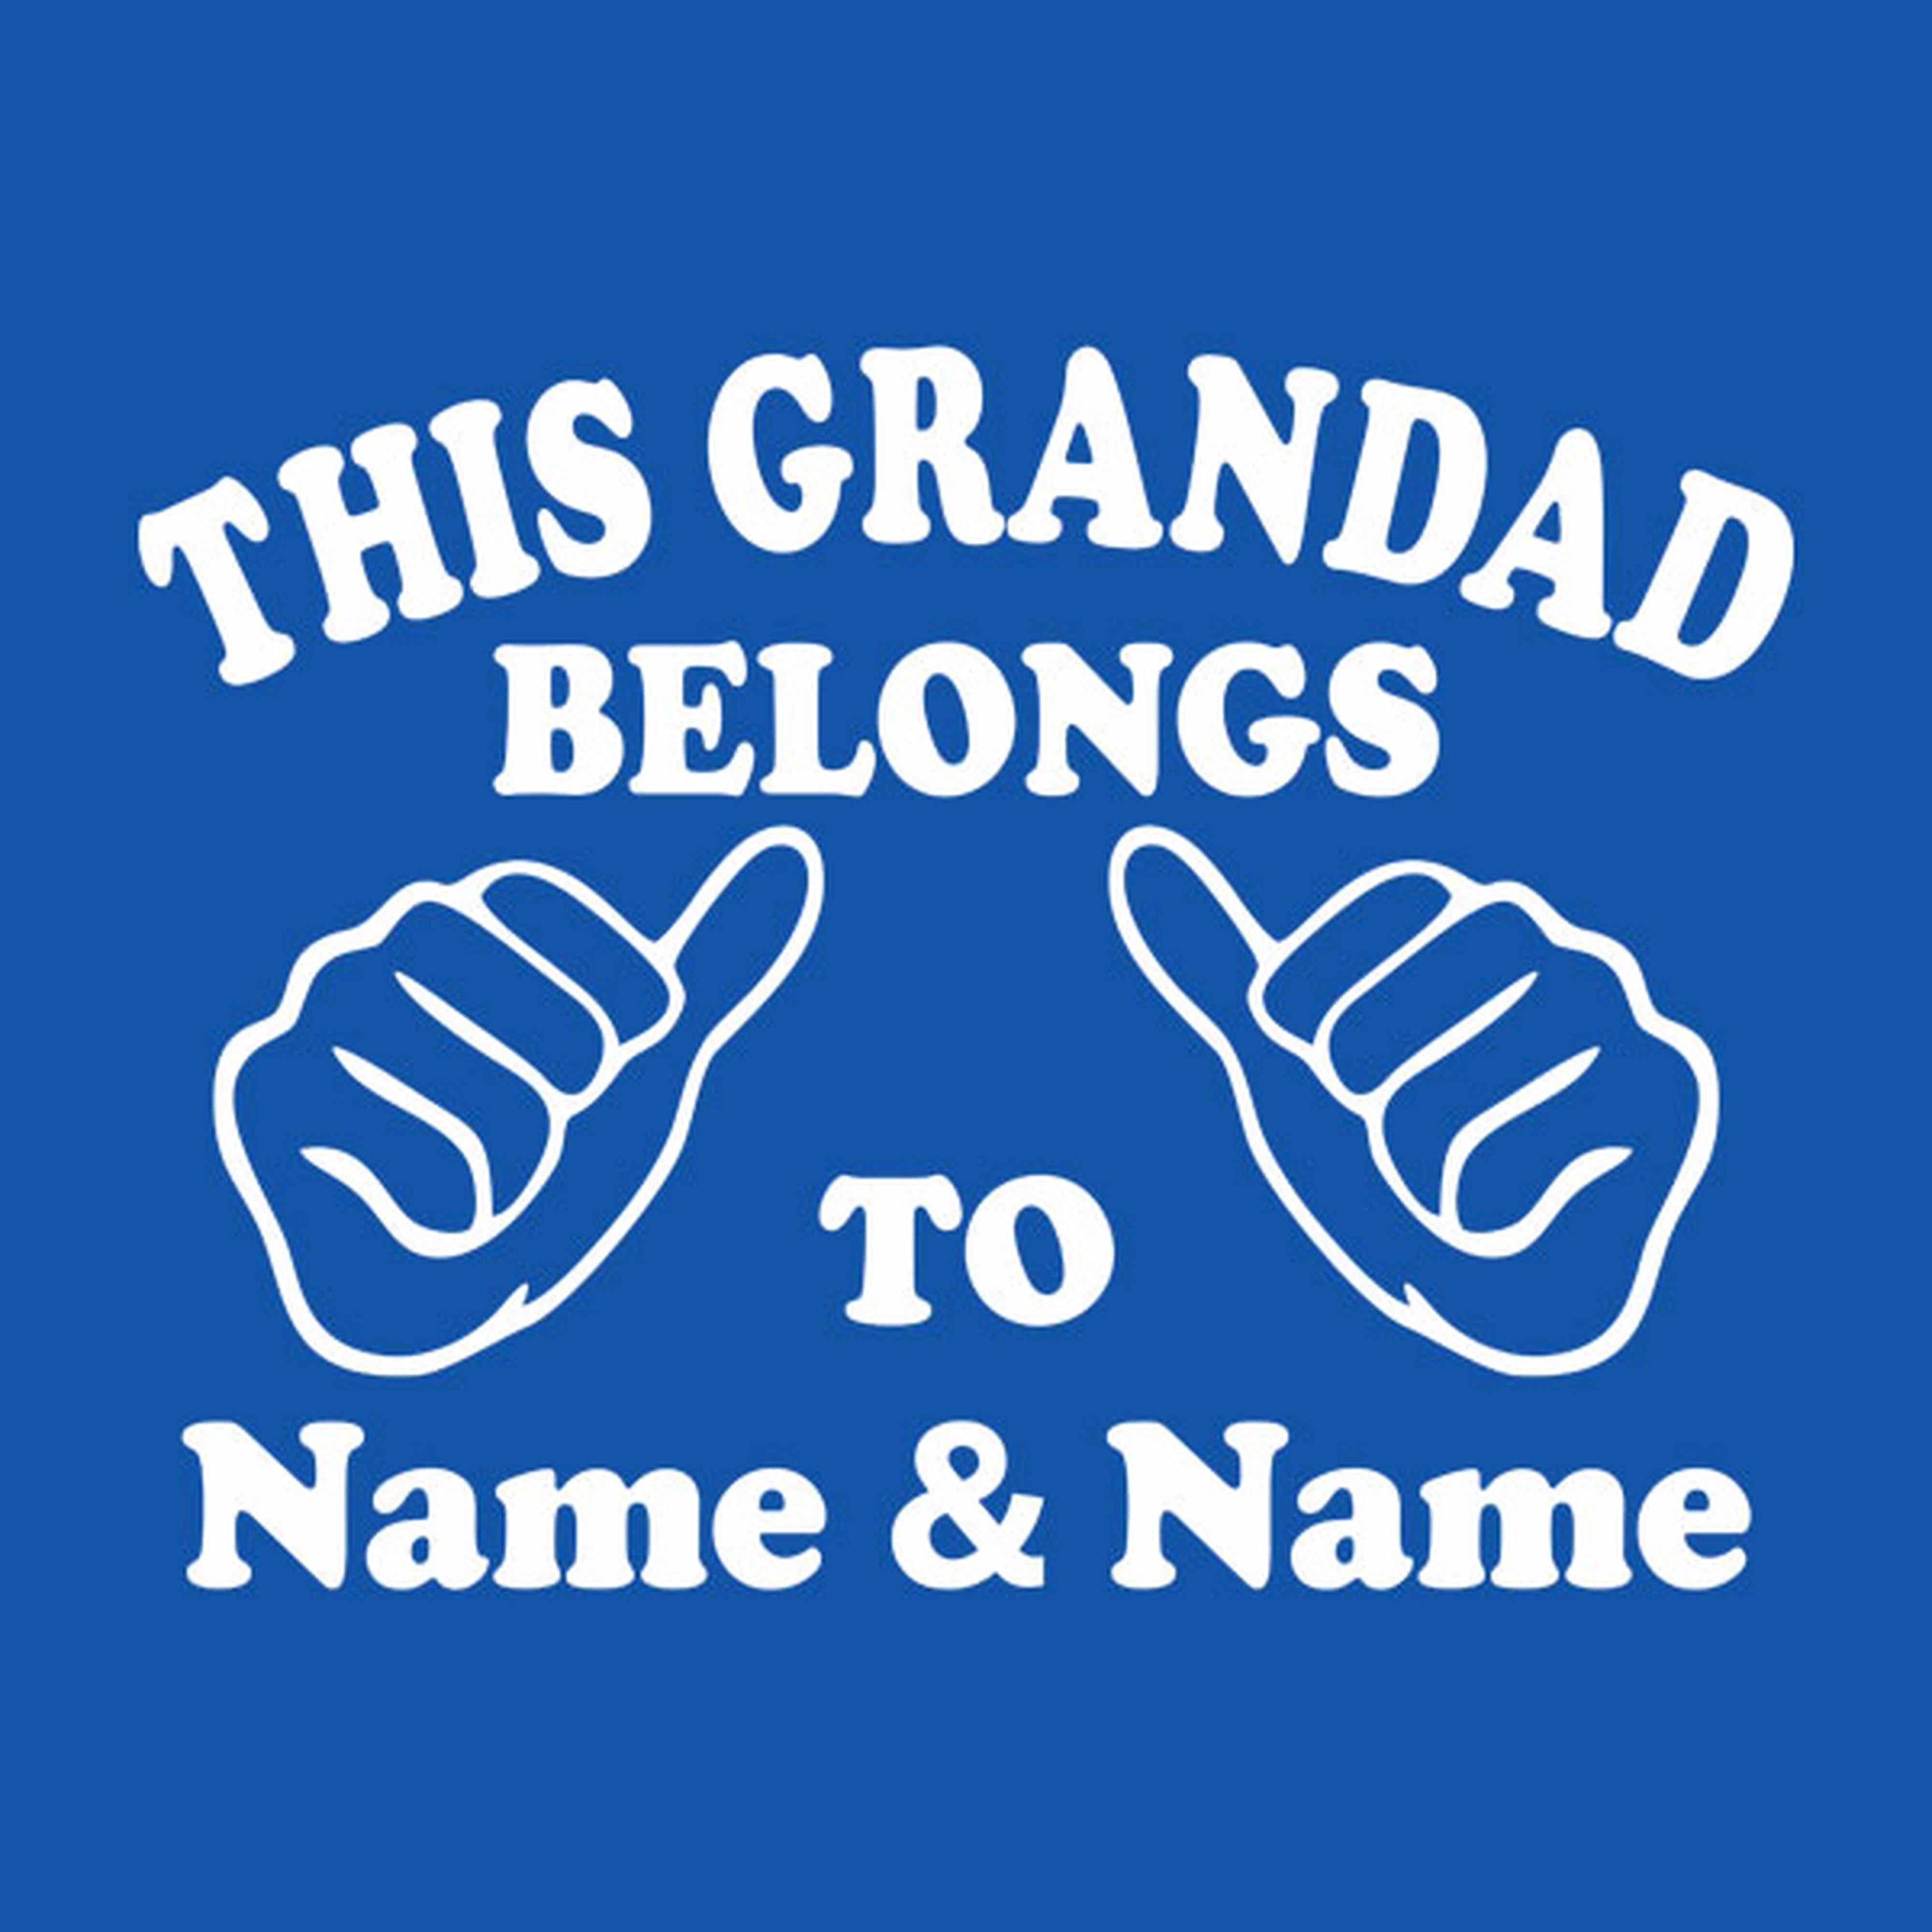 This Grandad belongs to: